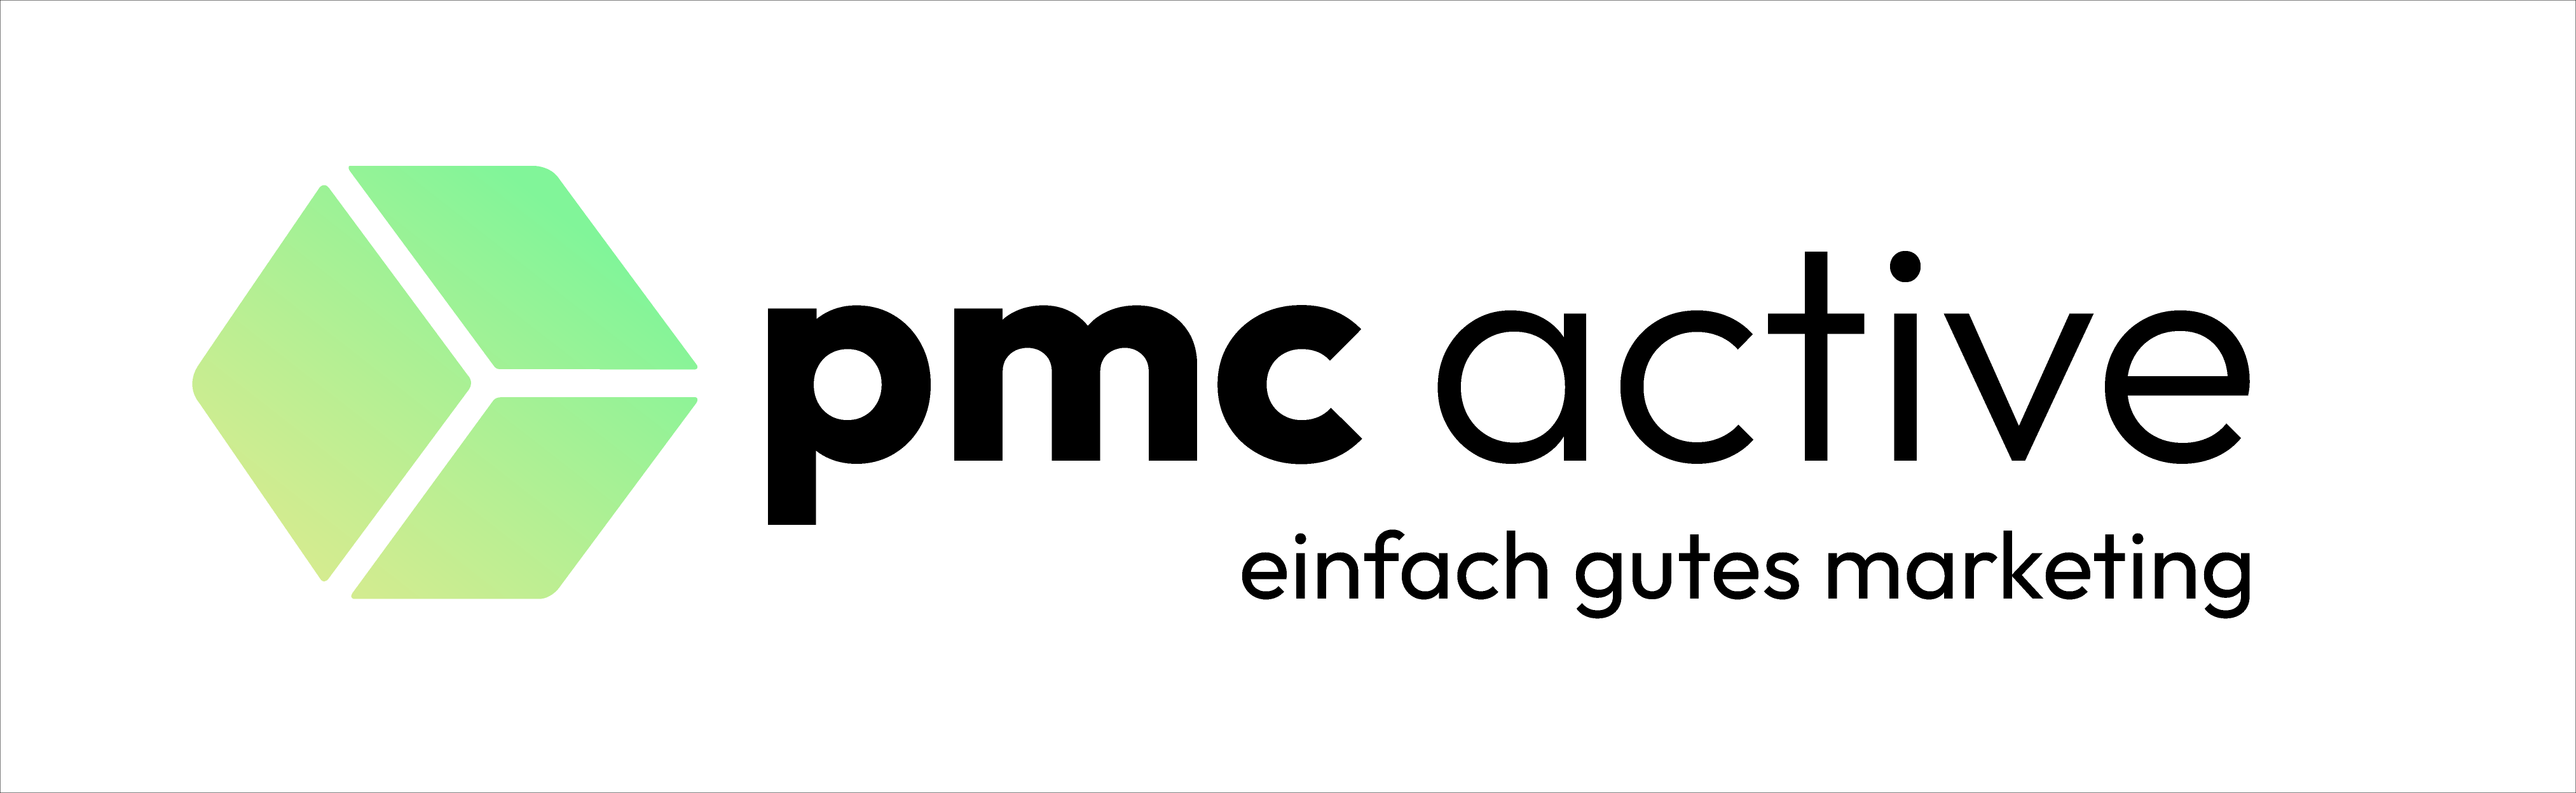 Das Logo der Marketingagentur pmc active.